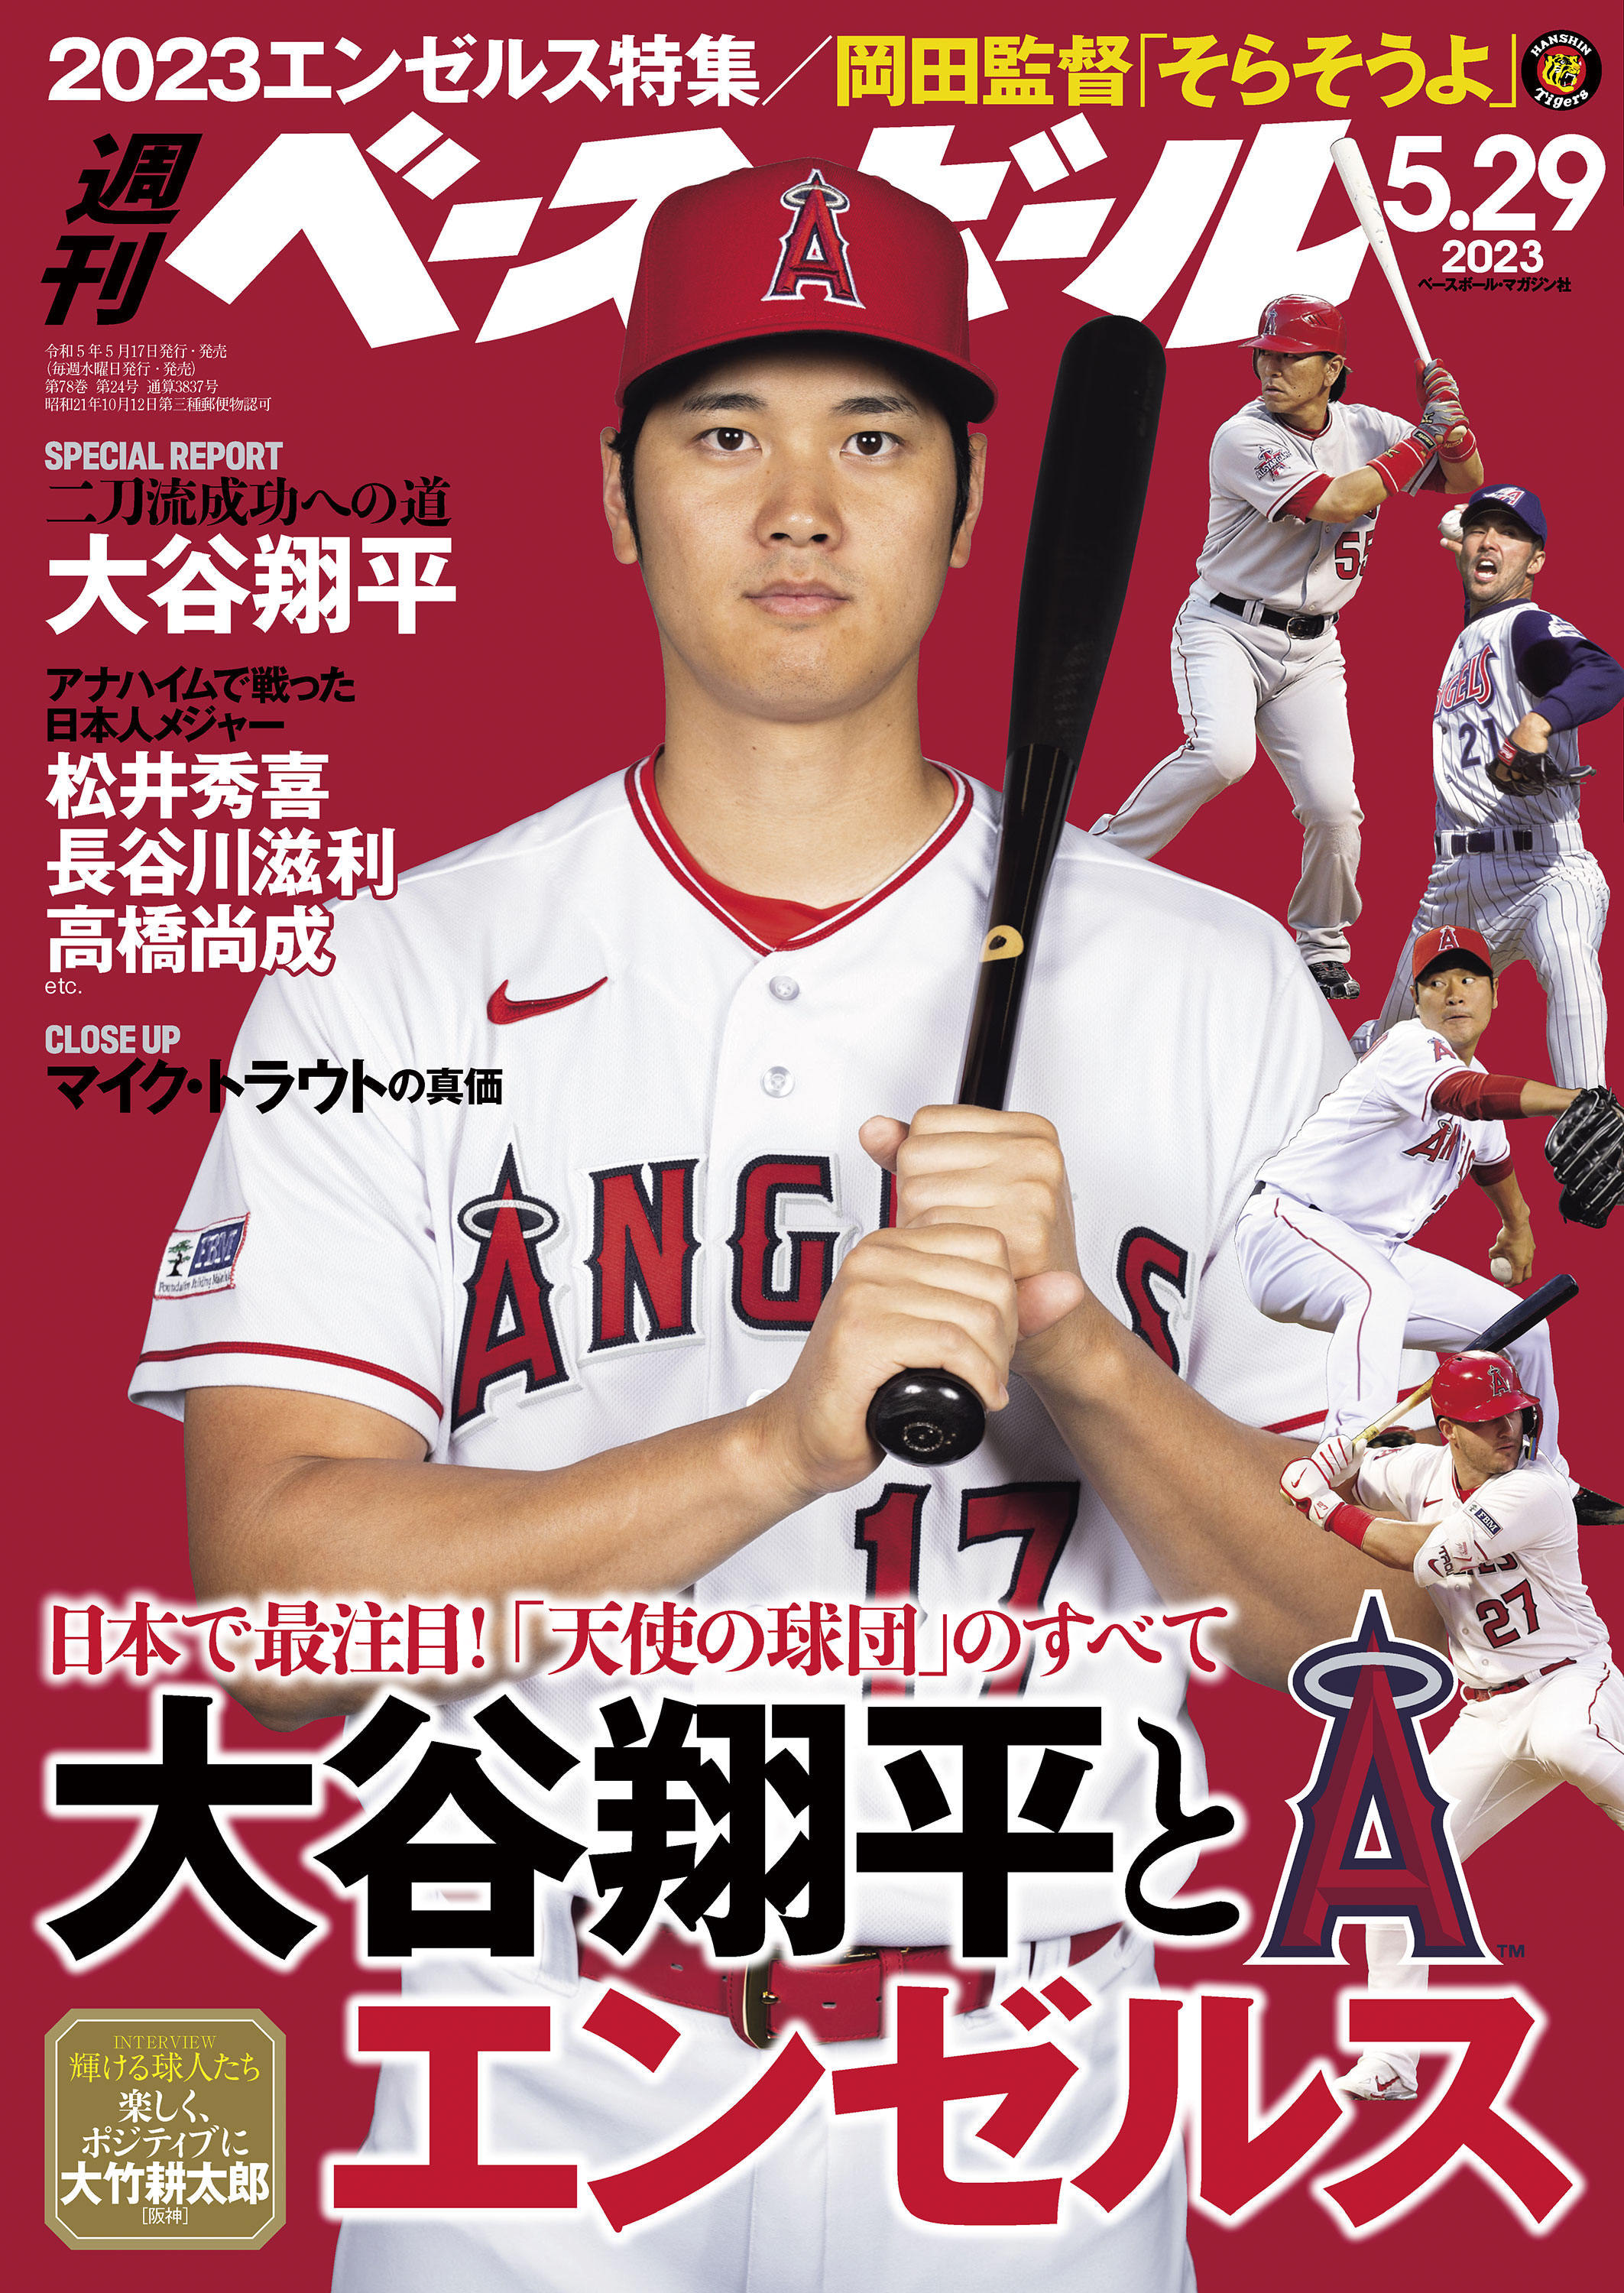 大谷翔平 二刀流の是非 投手の打撃論 ベースボールマガジン 2013年 7月 